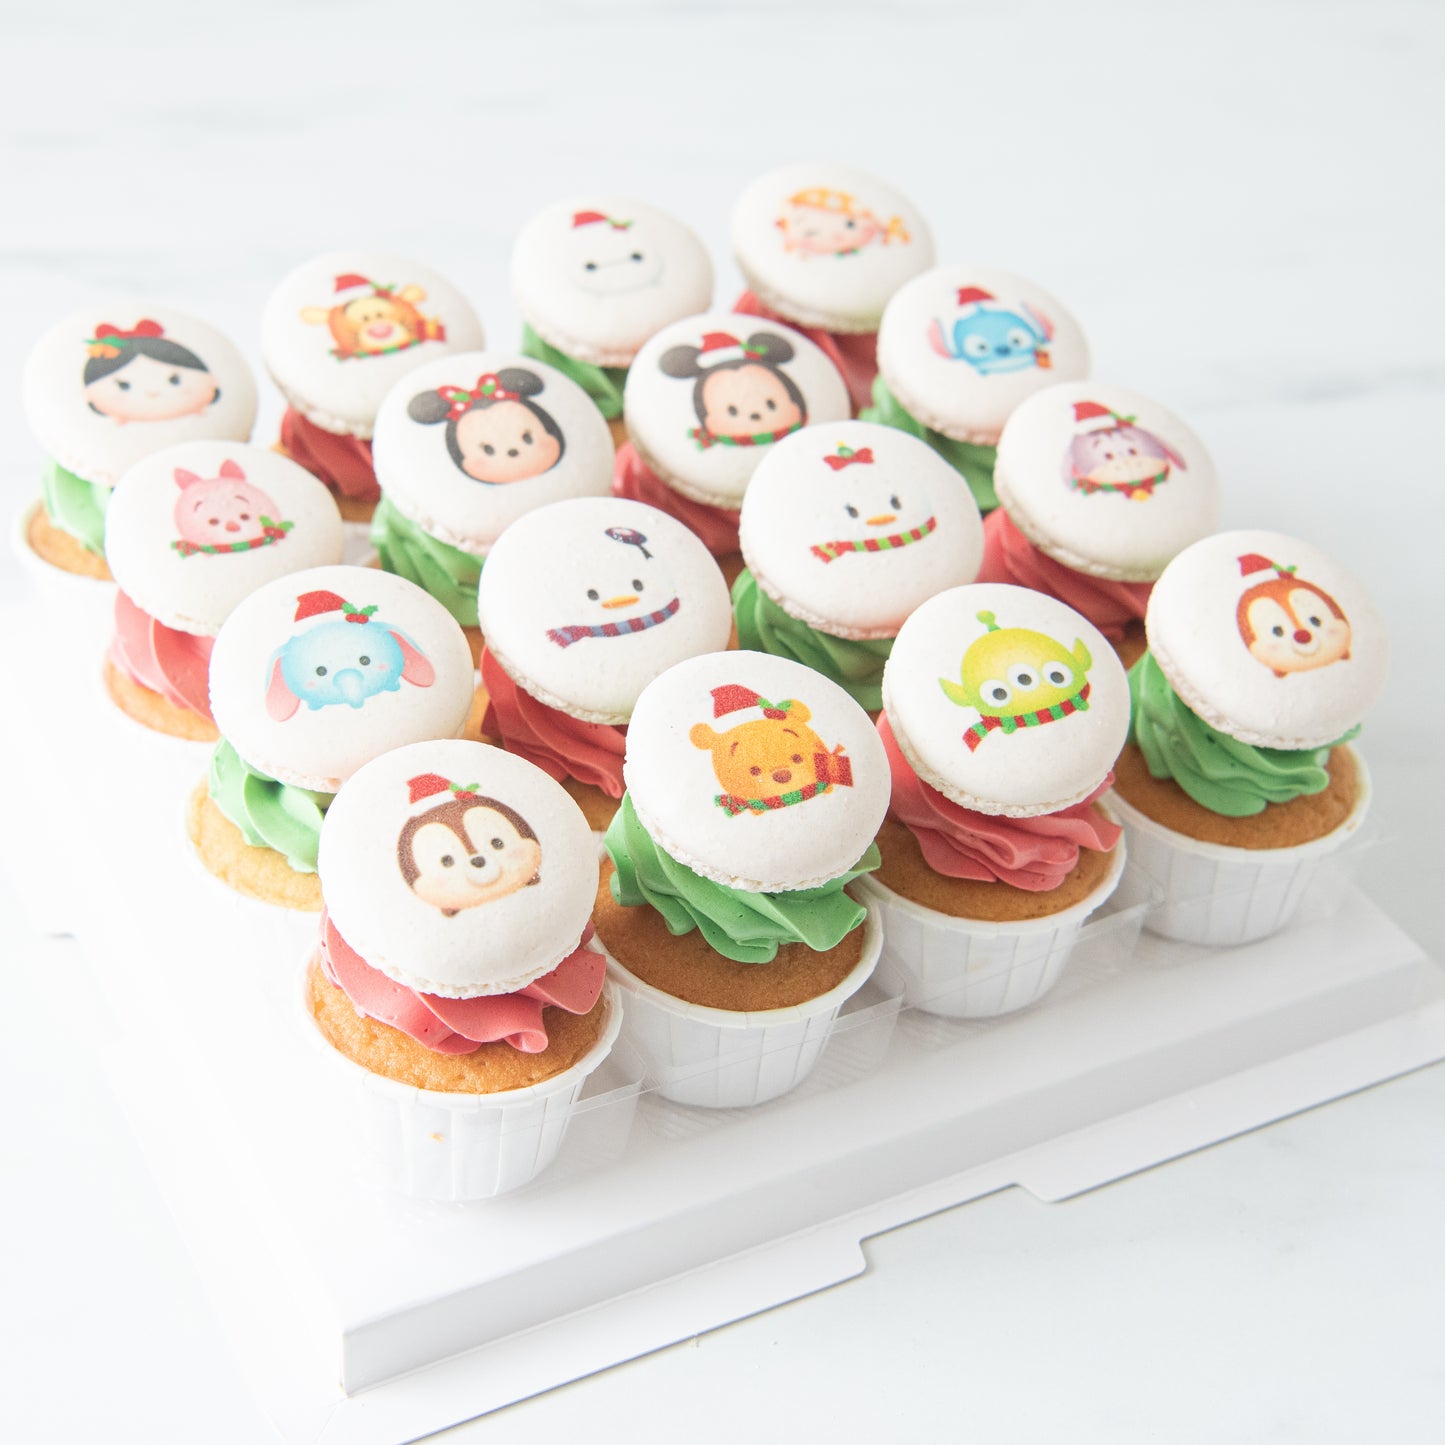 Ho ho ho! | Merry Christmas | Disney Christmas 16 pcs cupcakes (Tsum Tsum) & Red Green creams)